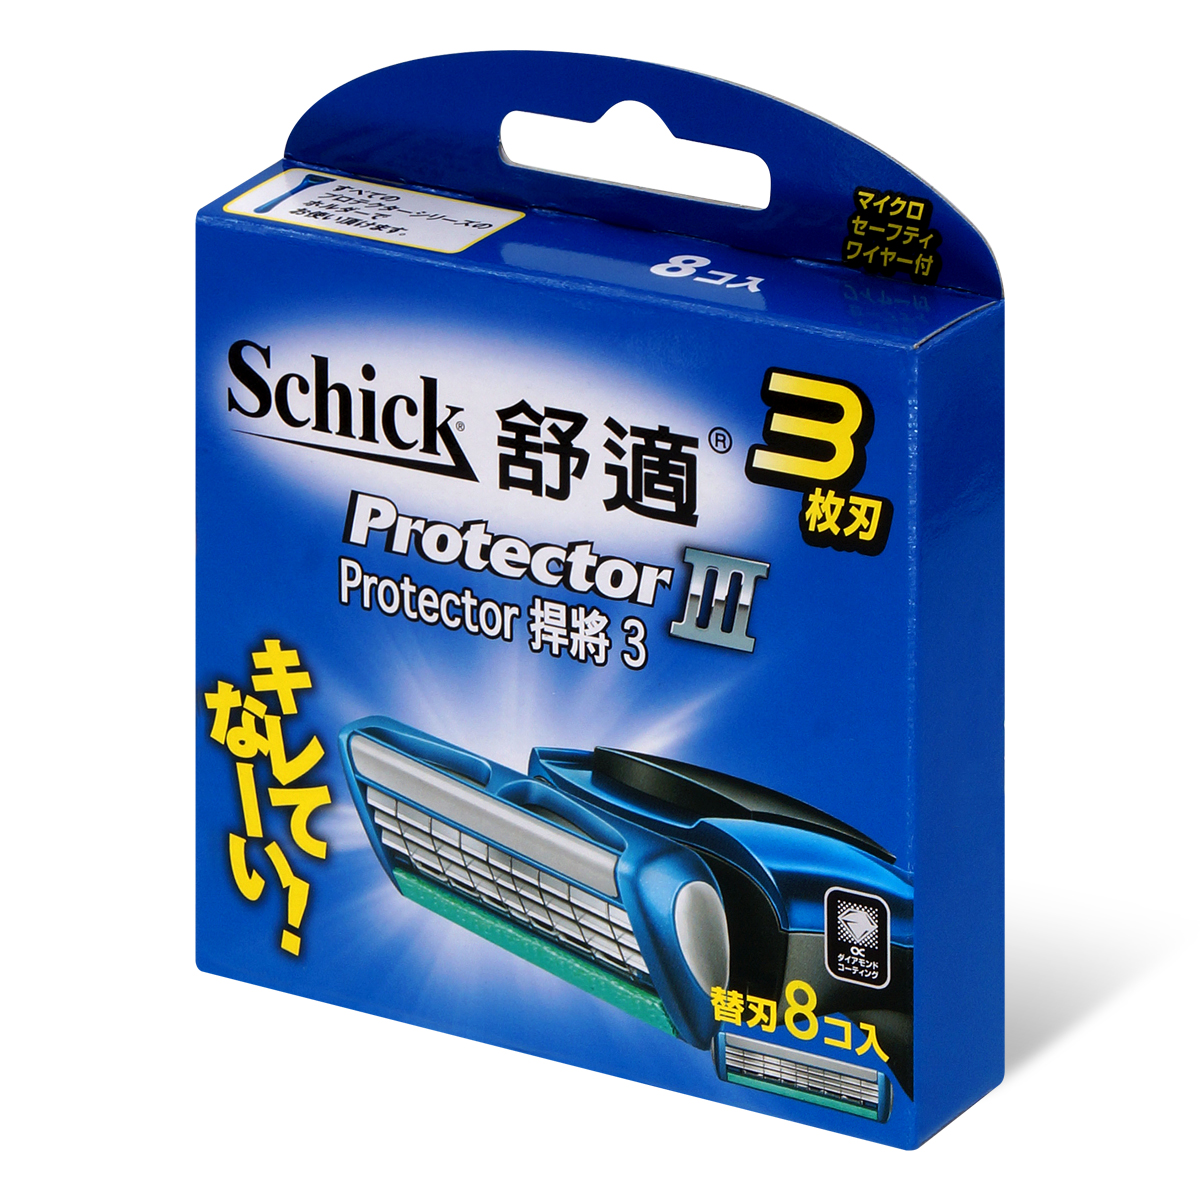 Schick 舒适 Protecter3 捍将 3  剃鬚刀补充刀片 8 片-p_1